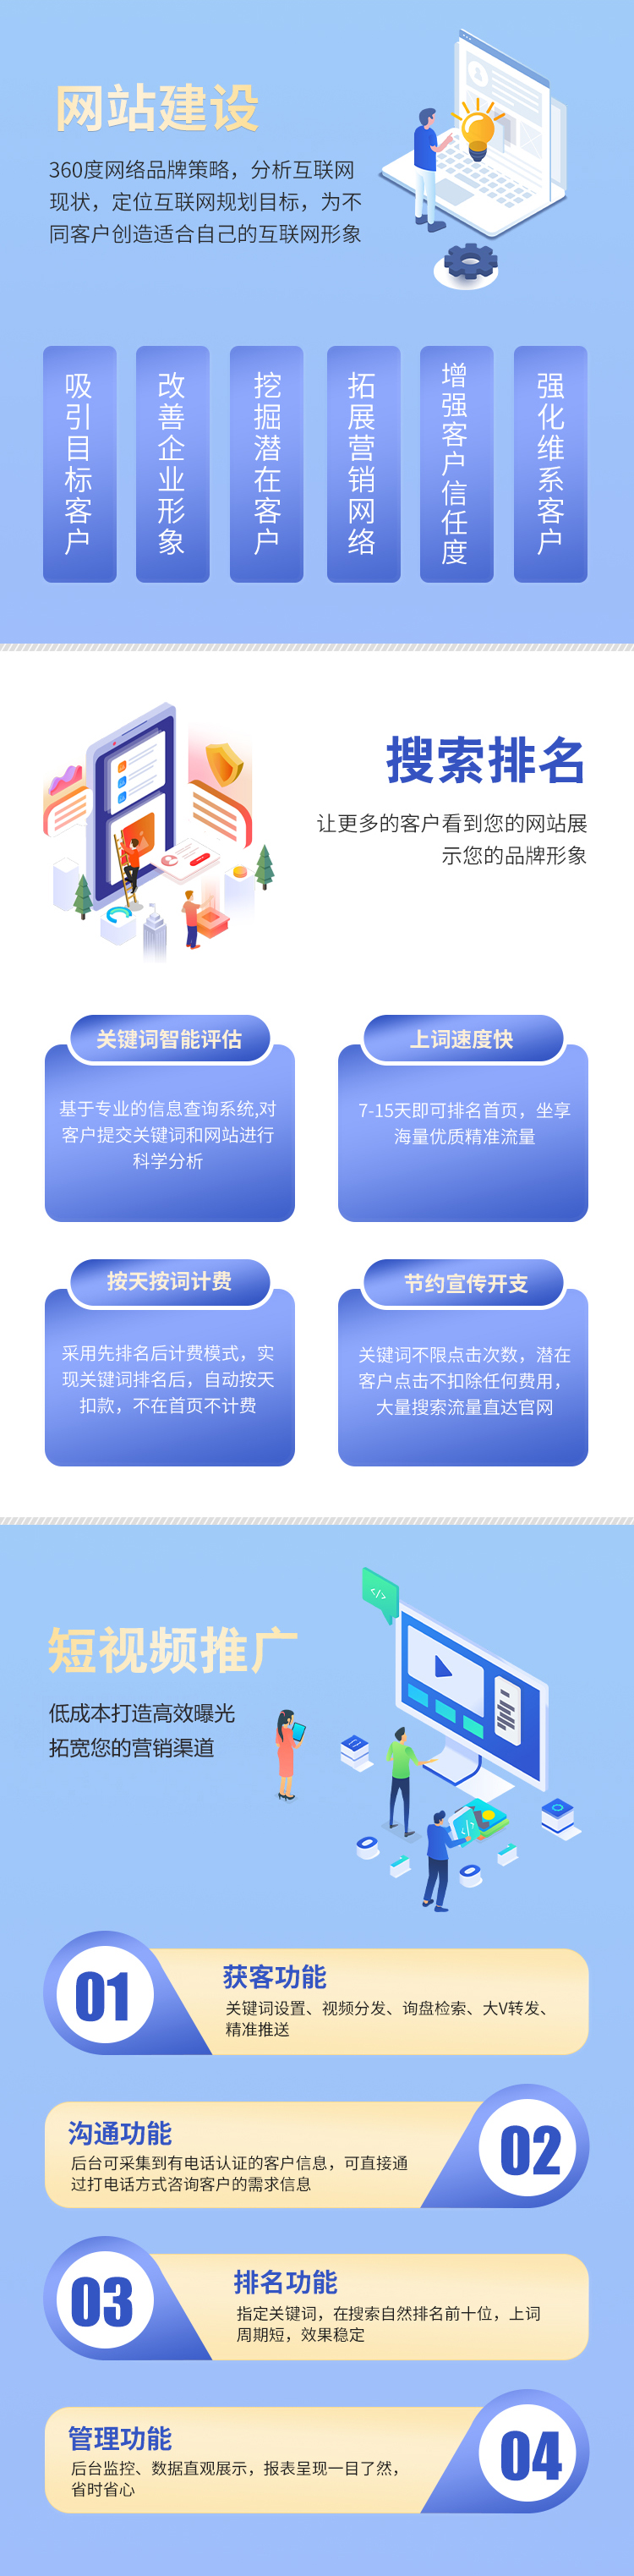 杭州网站建设制作公司